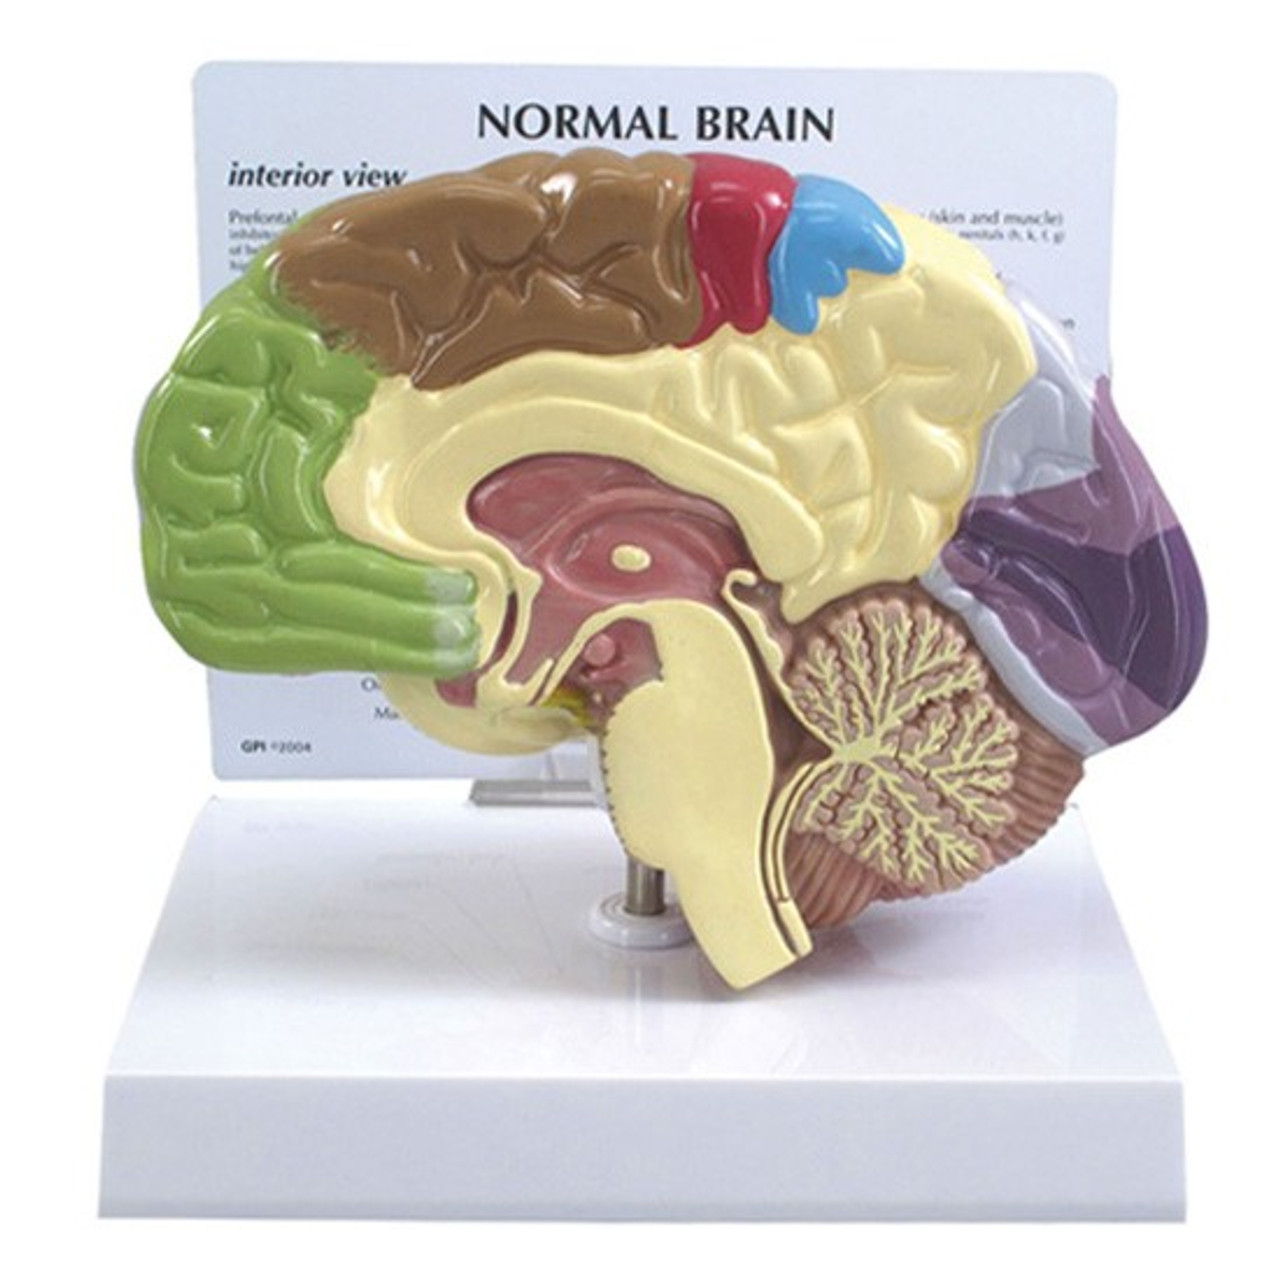 Мозг купить спб. Муляж мозга. Анатомическая модель мозга. Макет головного мозга. Муляж головного мозга человека.